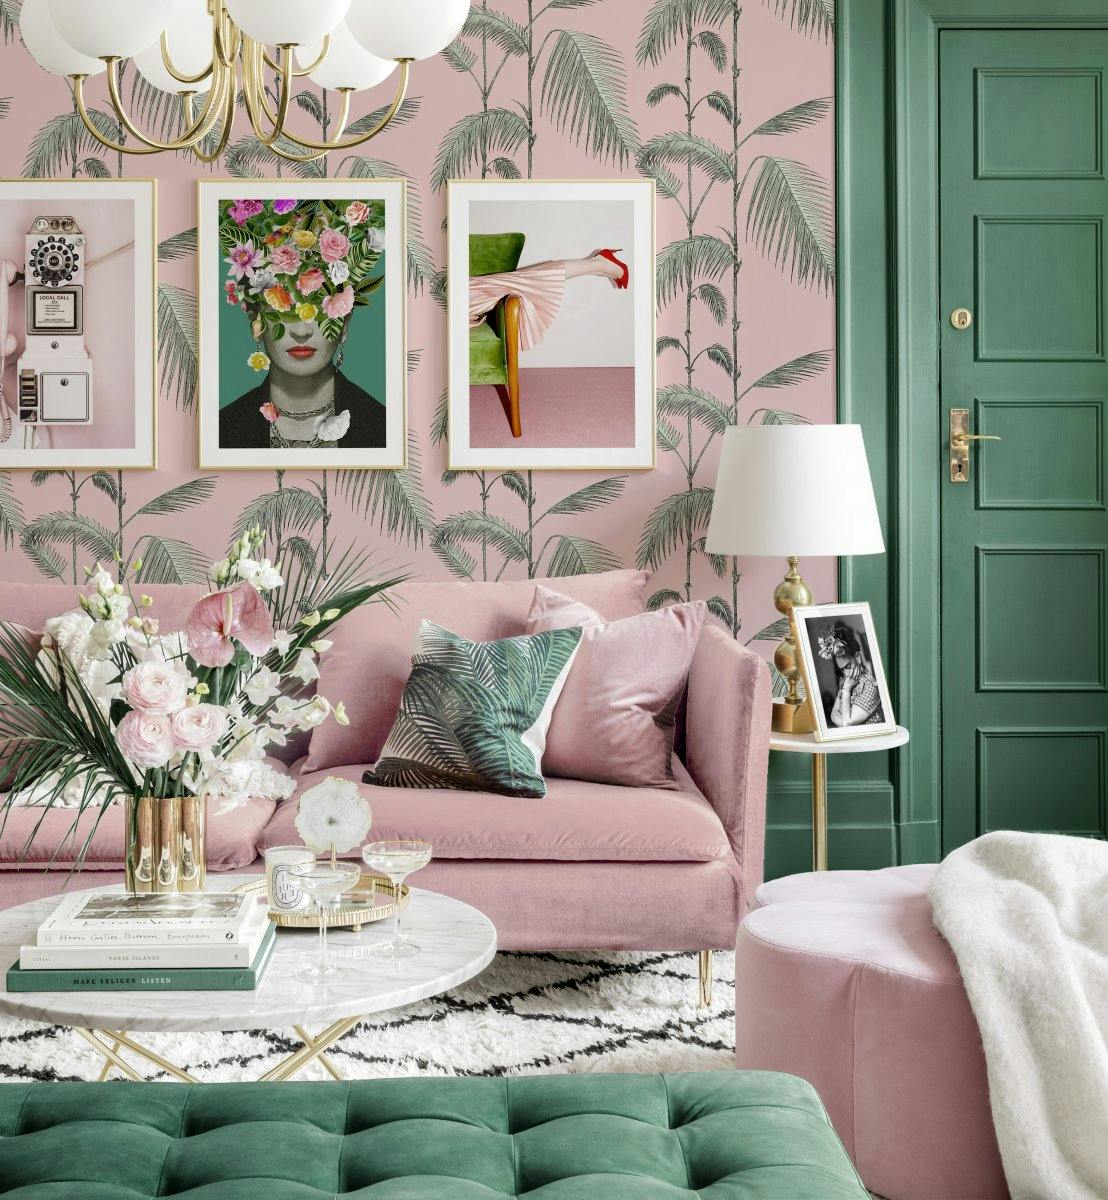 Pozytywna galeria obrazow chinoiserie plakaty frida kahlo rozowo-zielony salon